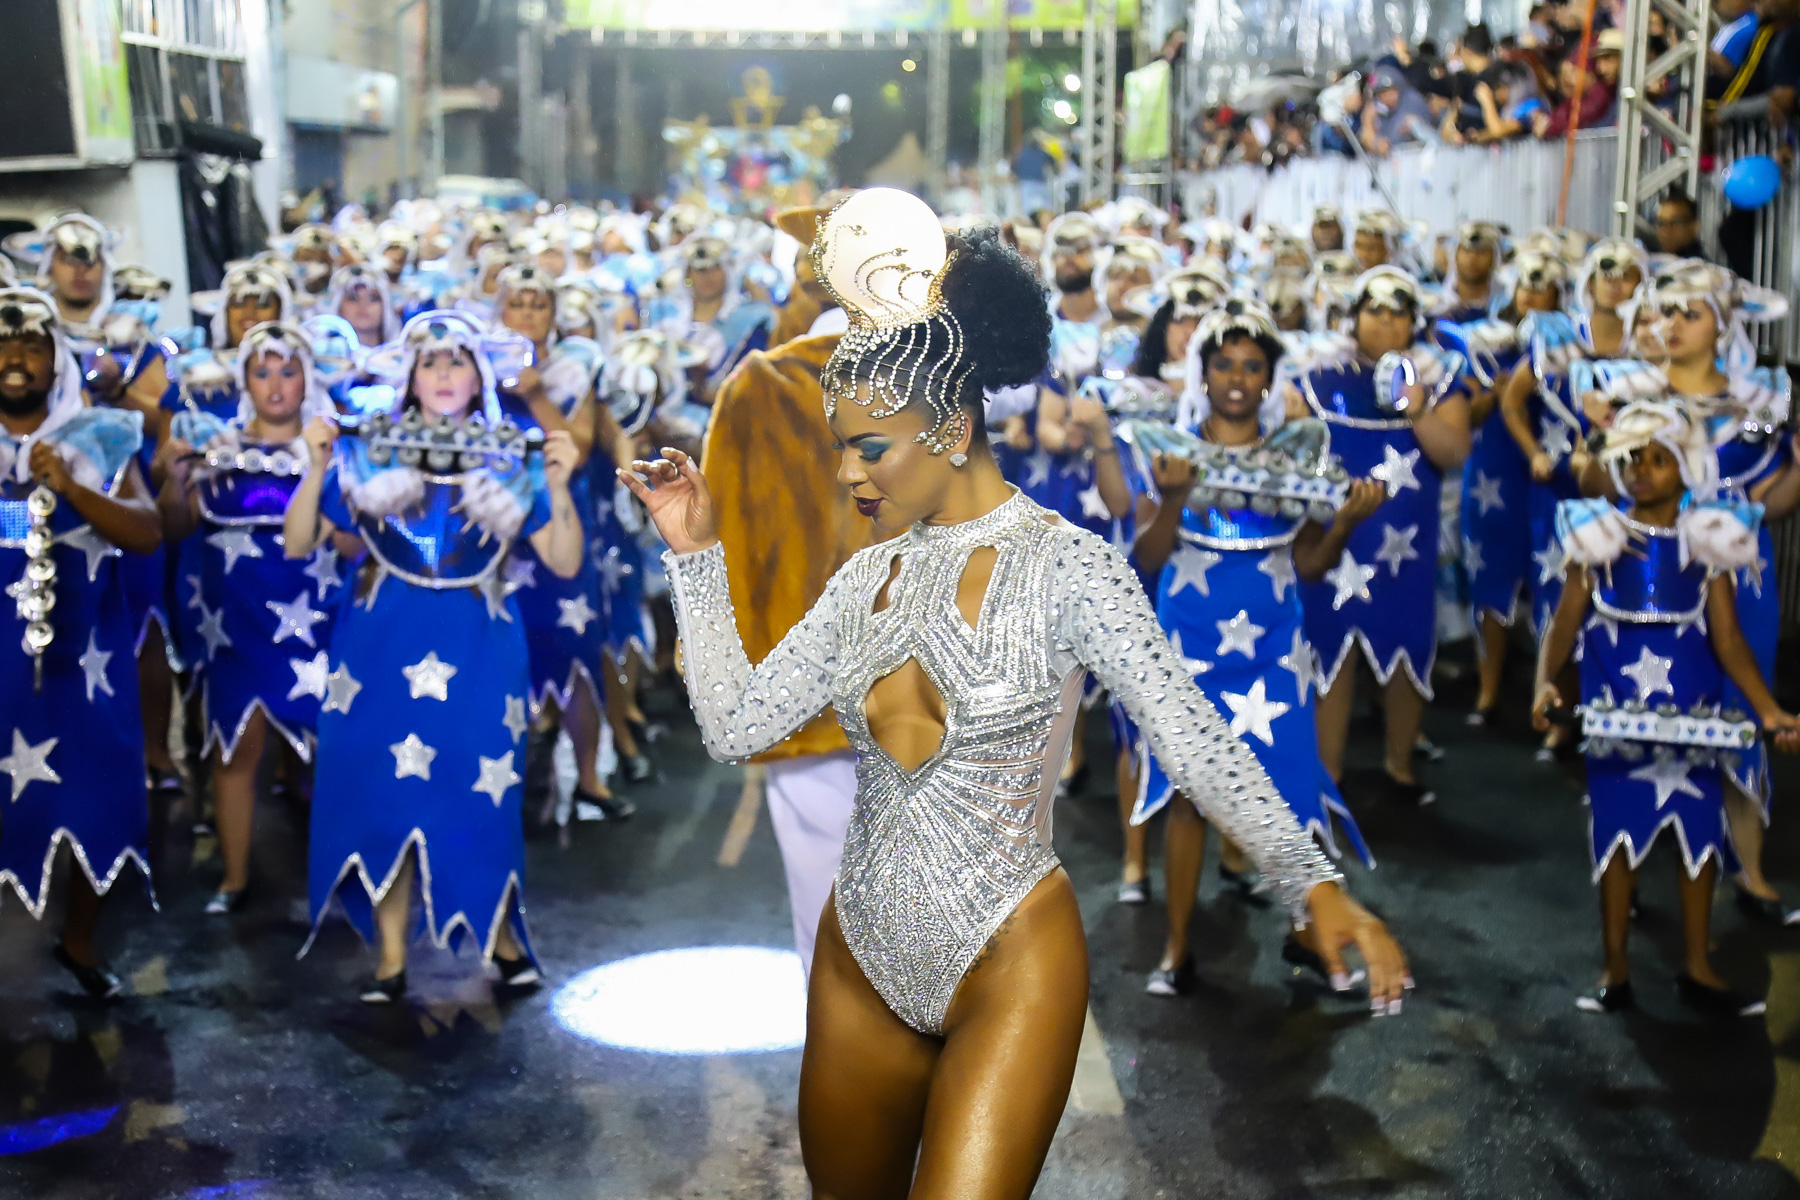 Carnaval de Curitiba